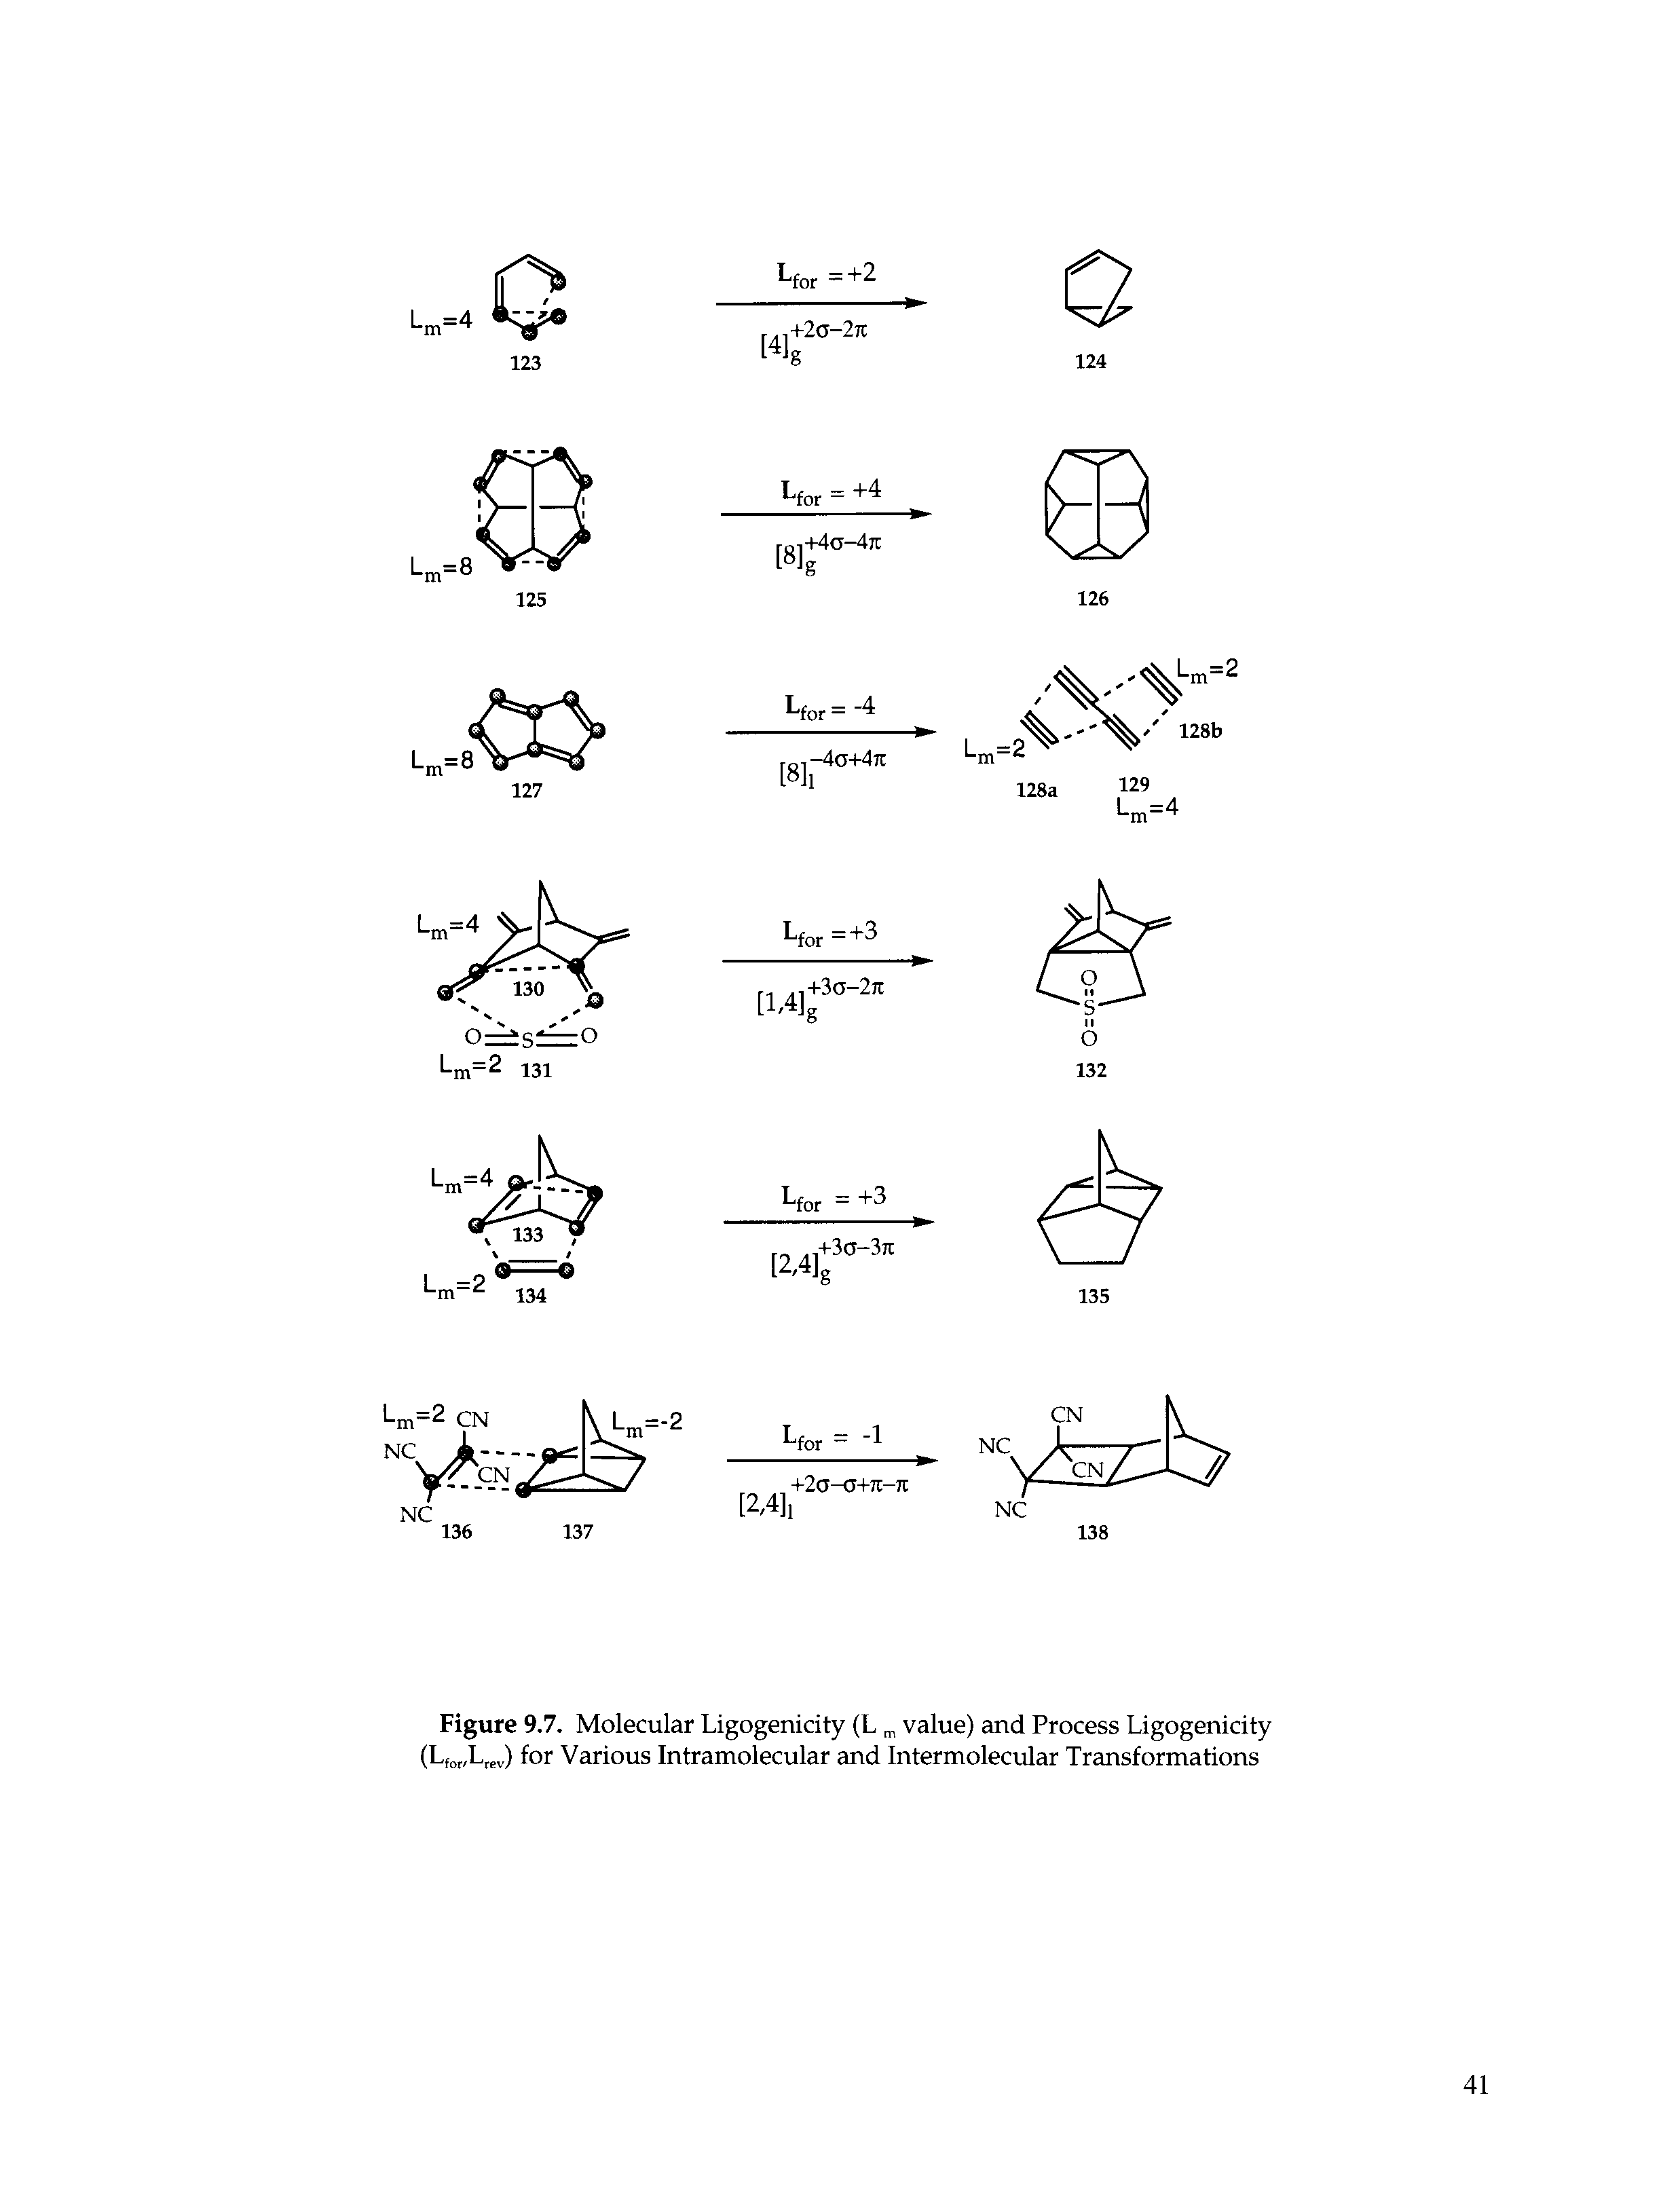 Figure 9.7. Molecular Ligogenicity (L value) and Process Ligogenicity (L, L , ) for Various Intramolecular and Intermolecular Transformations...